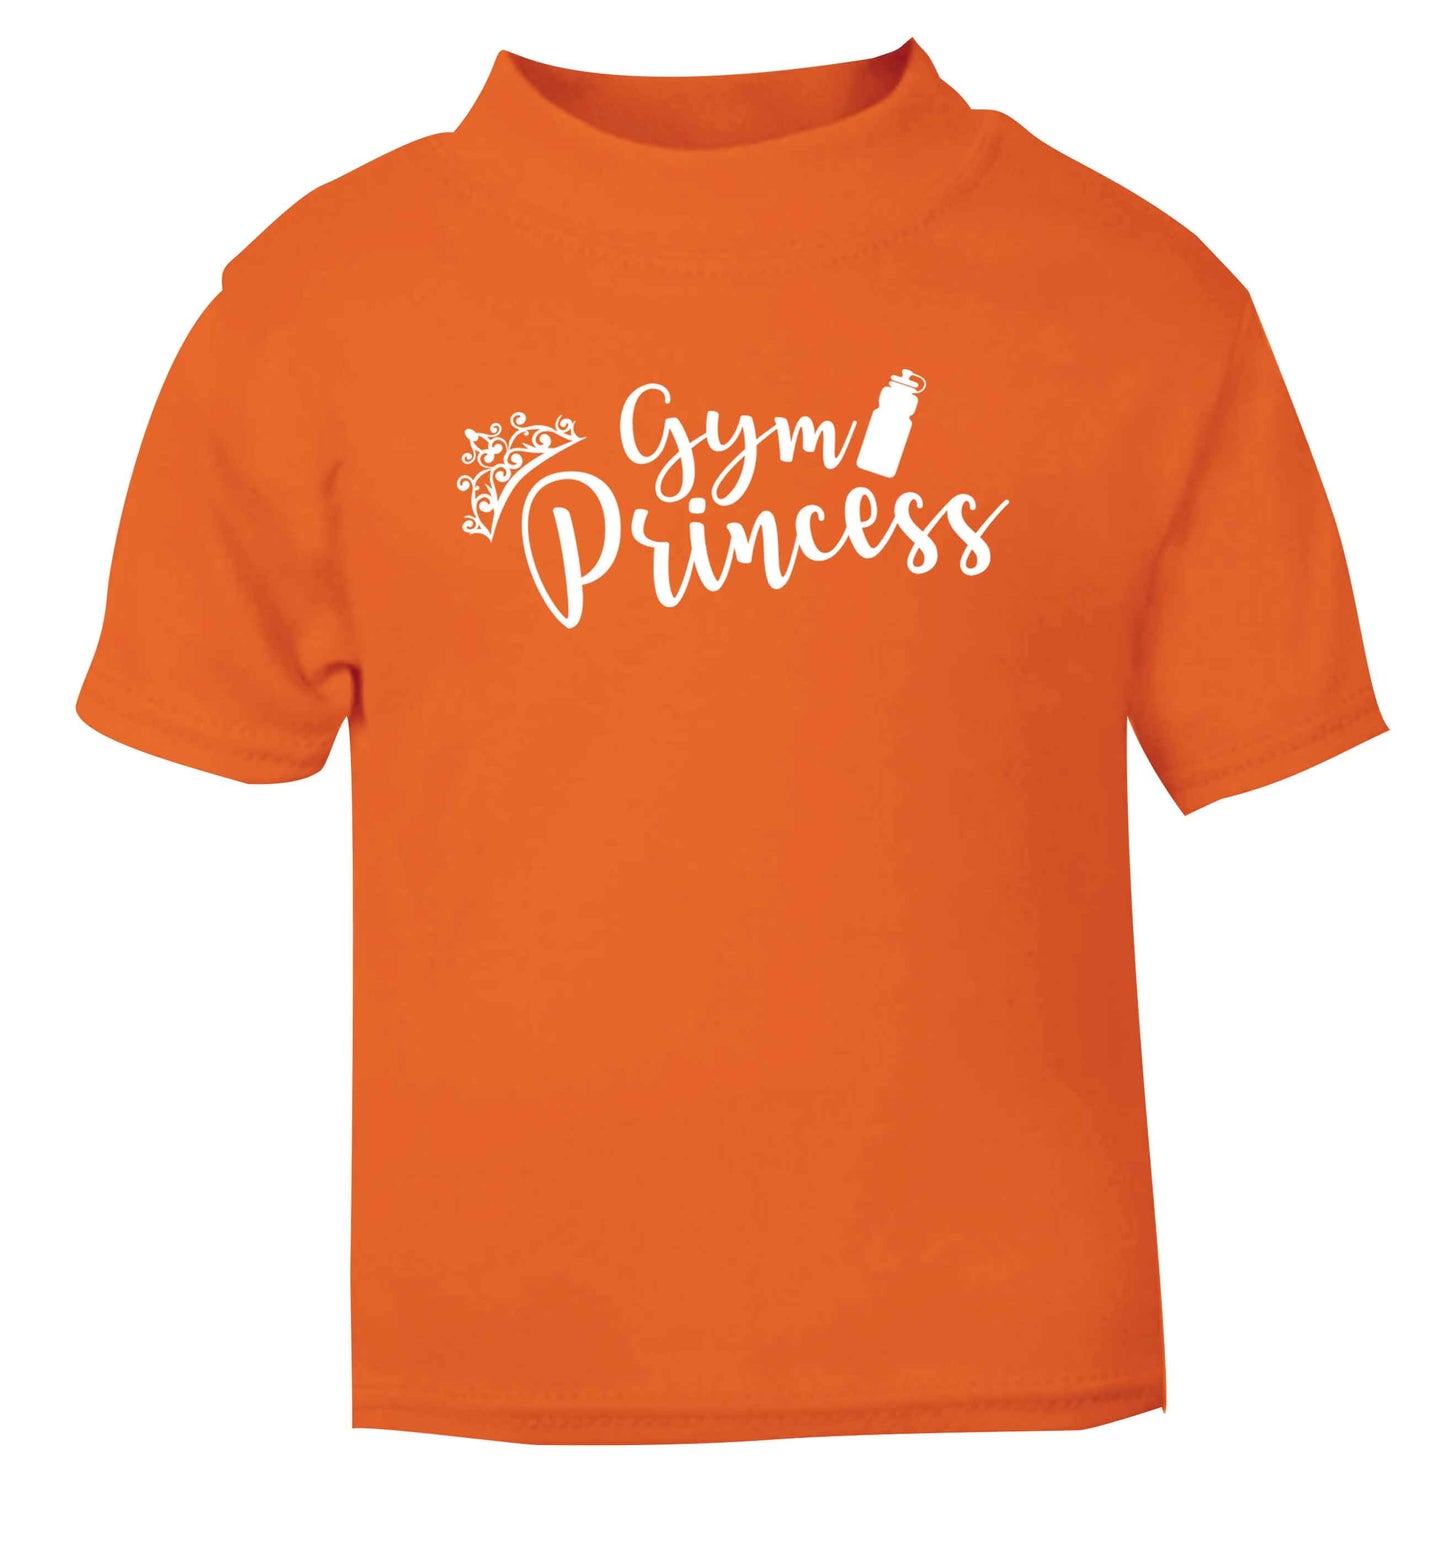 Gym princess orange Baby Toddler Tshirt 2 Years